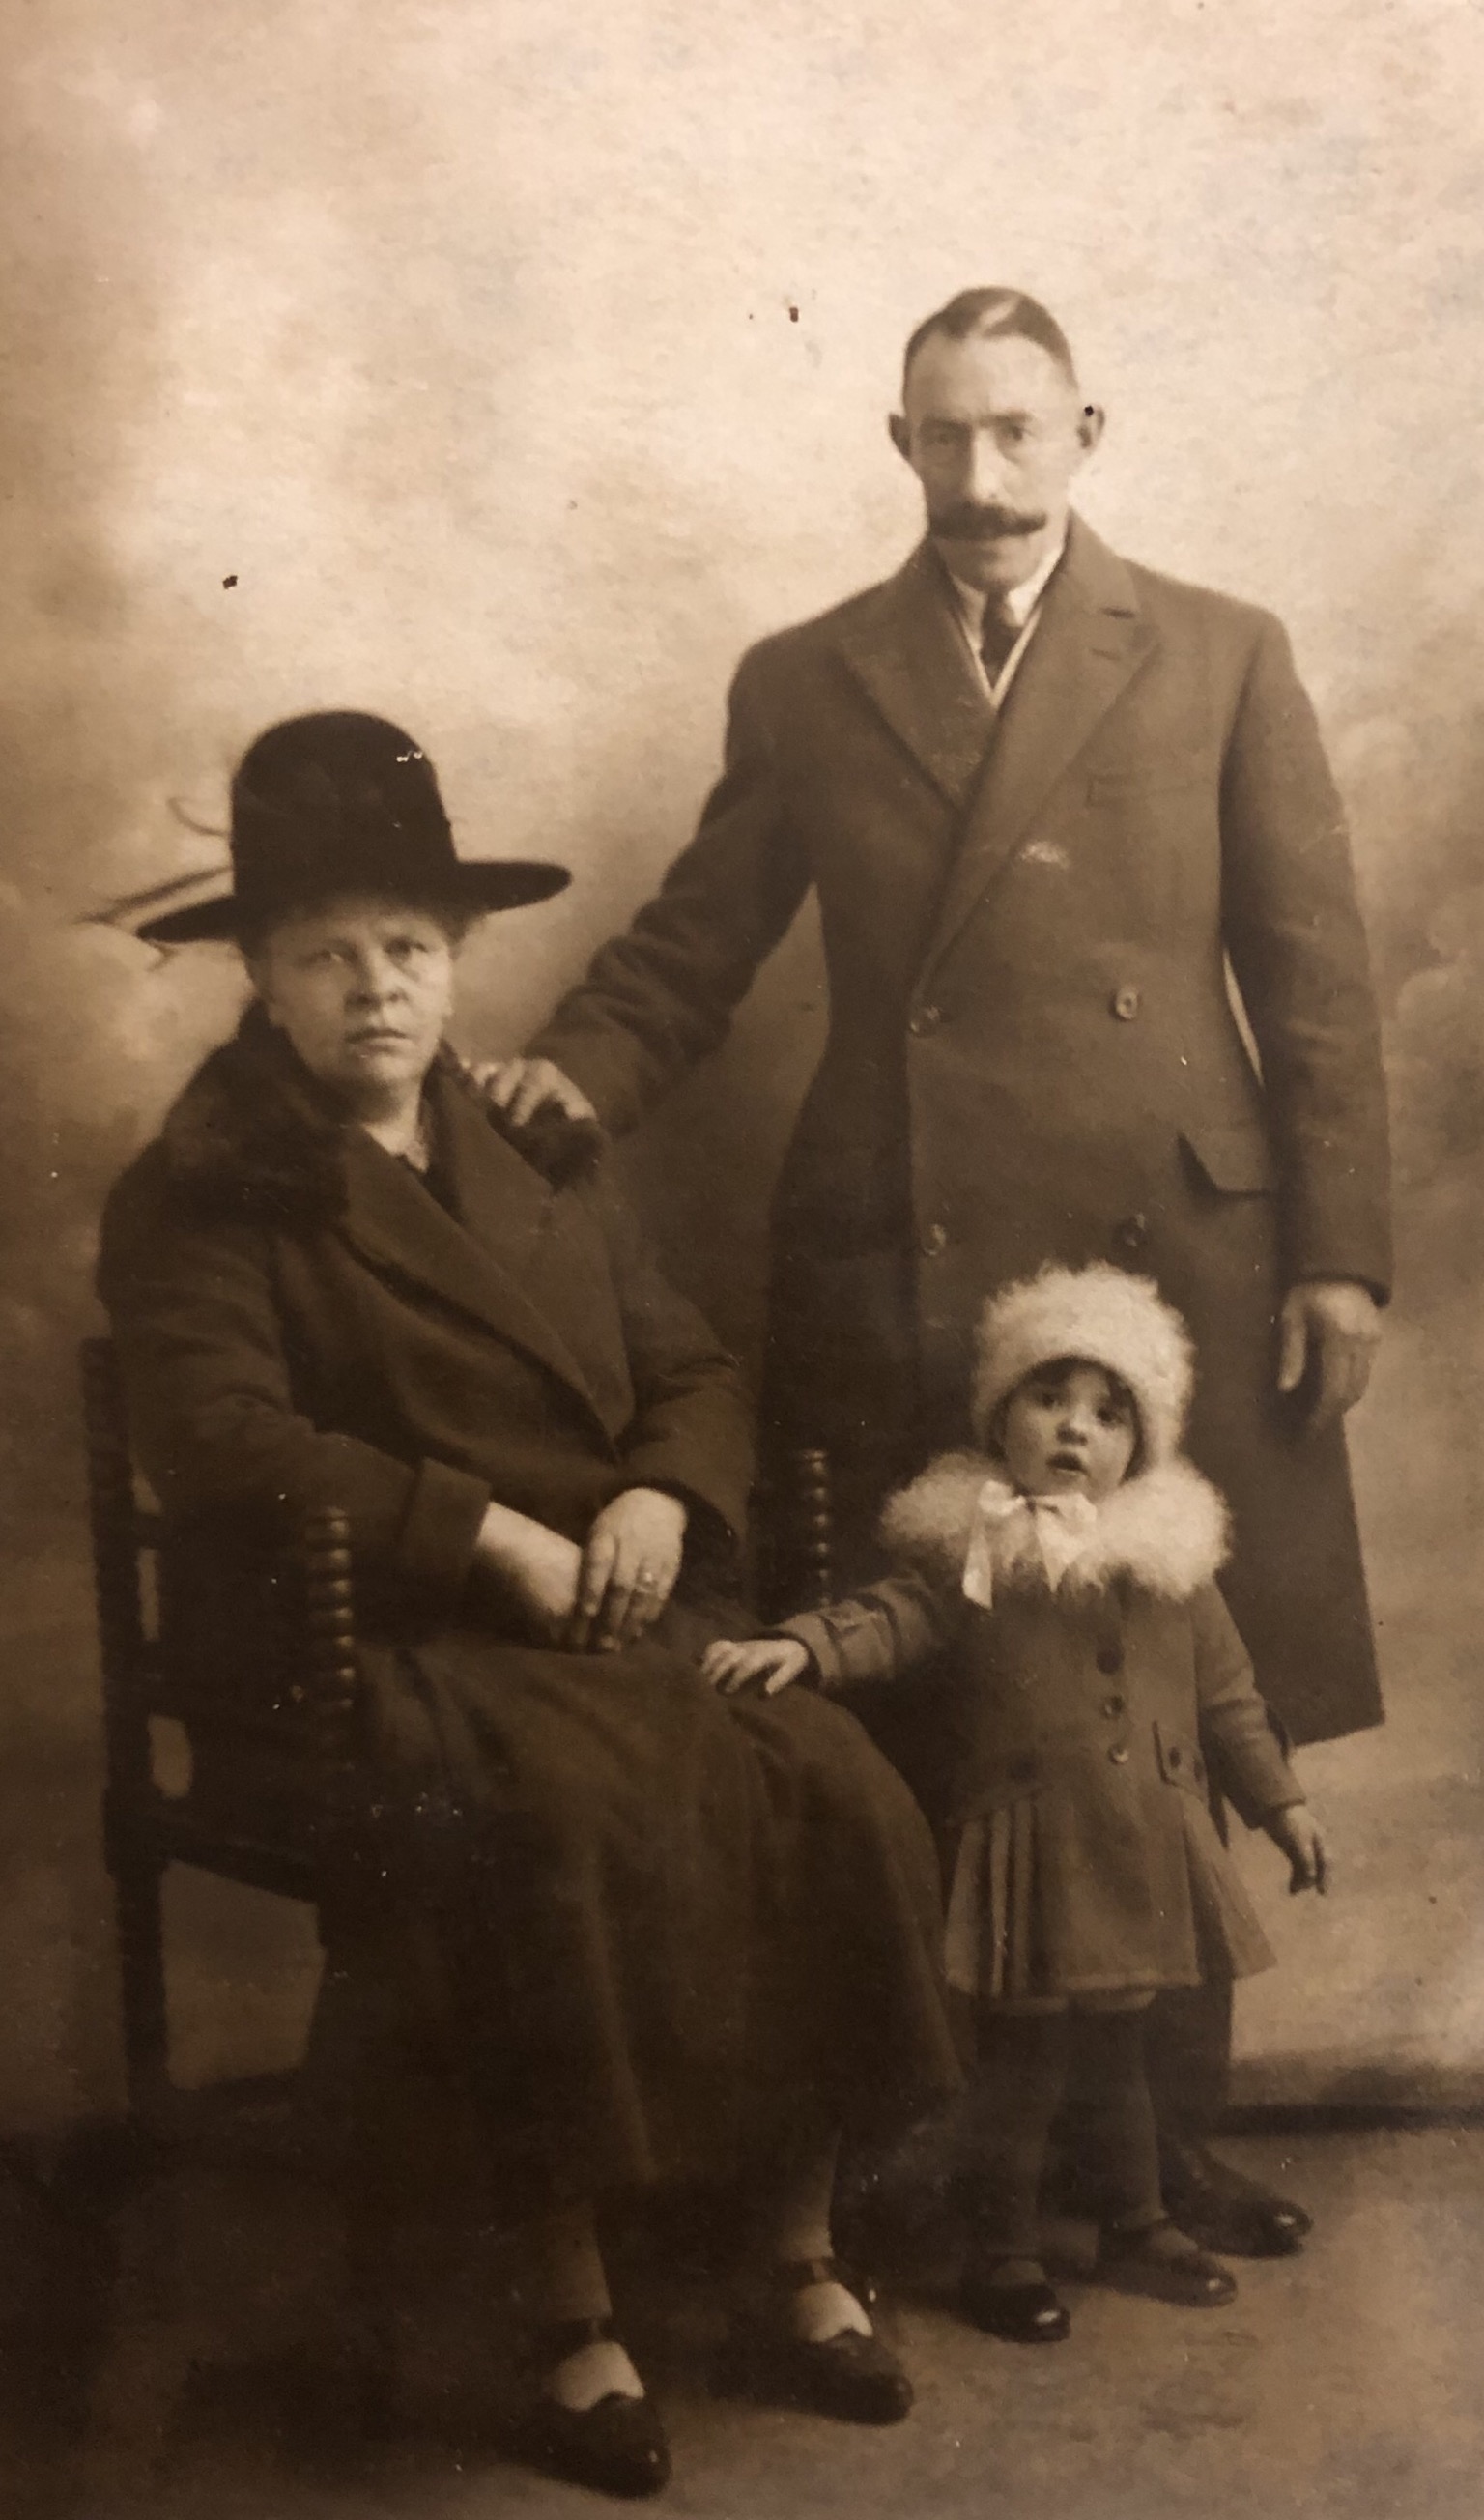 Gerrit van den Eijkel (1885) en Elizabeth van Lopik (1882) met hun dochter (waarschijnlijk Gijsbertha, 1924). Foto vermoedelijk in 1927 genomen getuige een stempel op de achterkant van de foto.